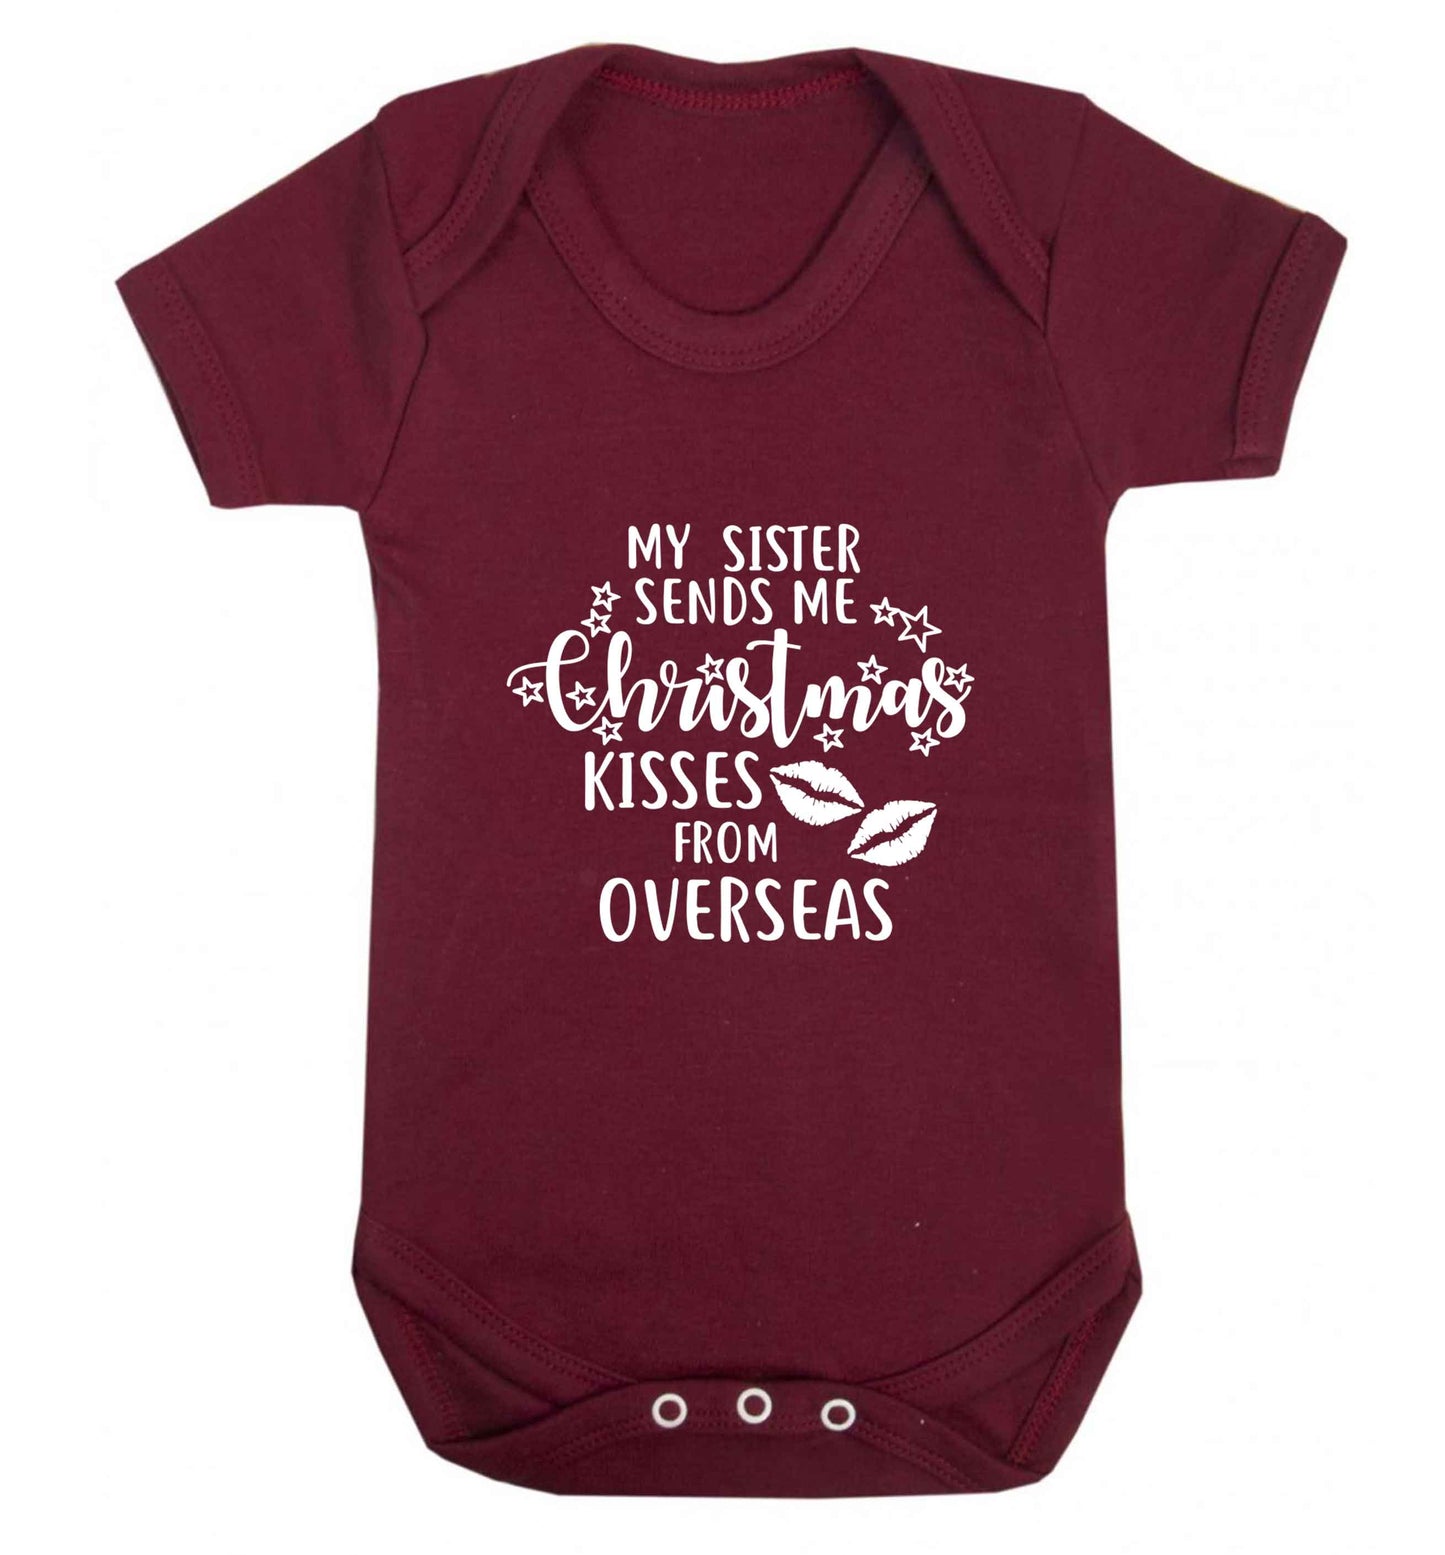 Grandad Christmas Kisses Overseas baby vest maroon 18-24 months